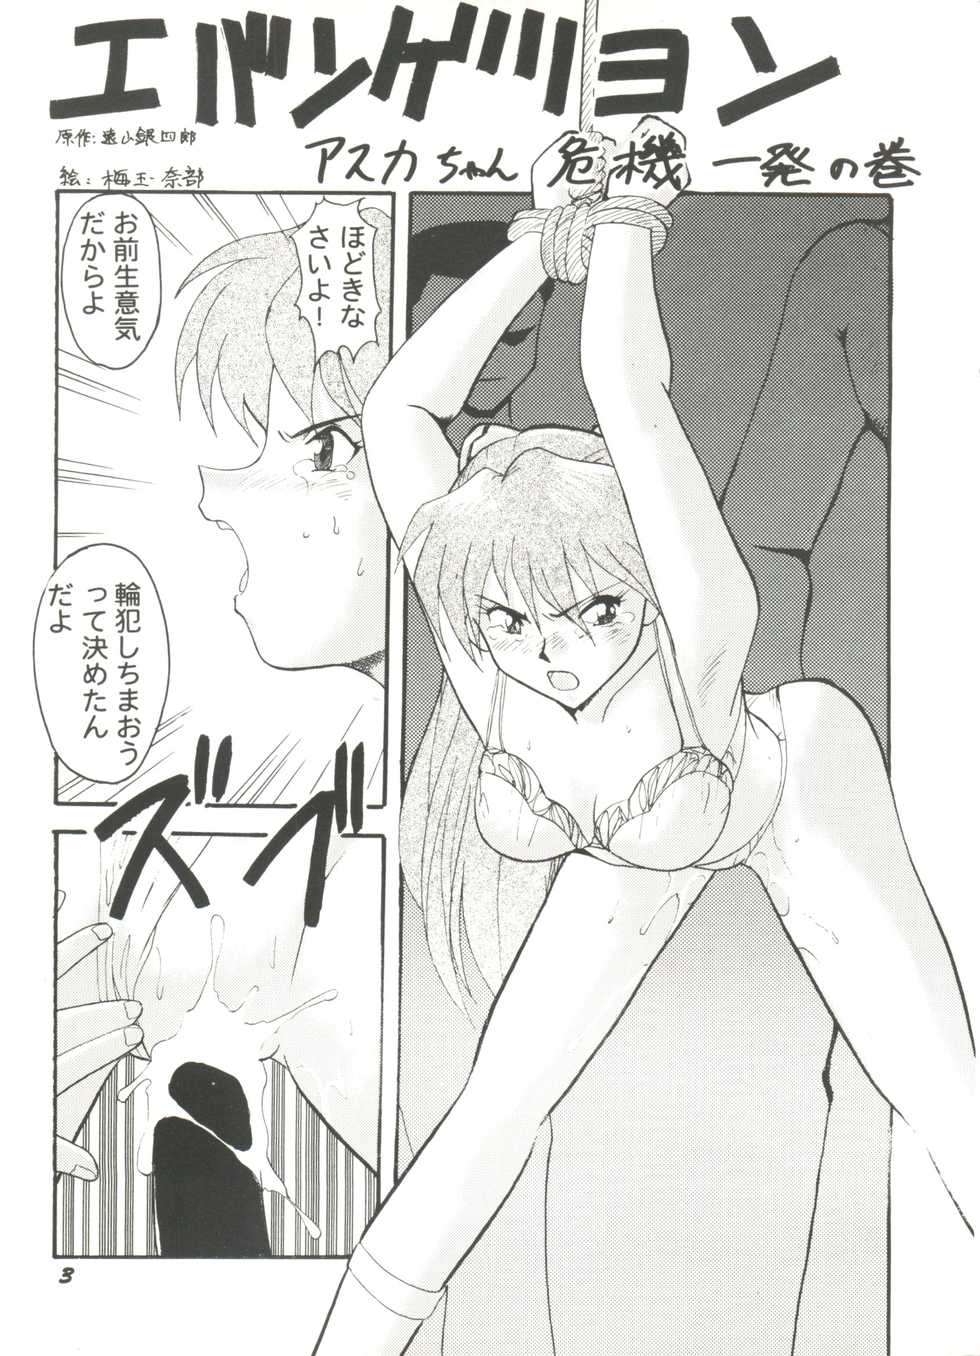 [Anthology] Doujin Anthology Bishoujo Gumi 9 (Various) - Page 7